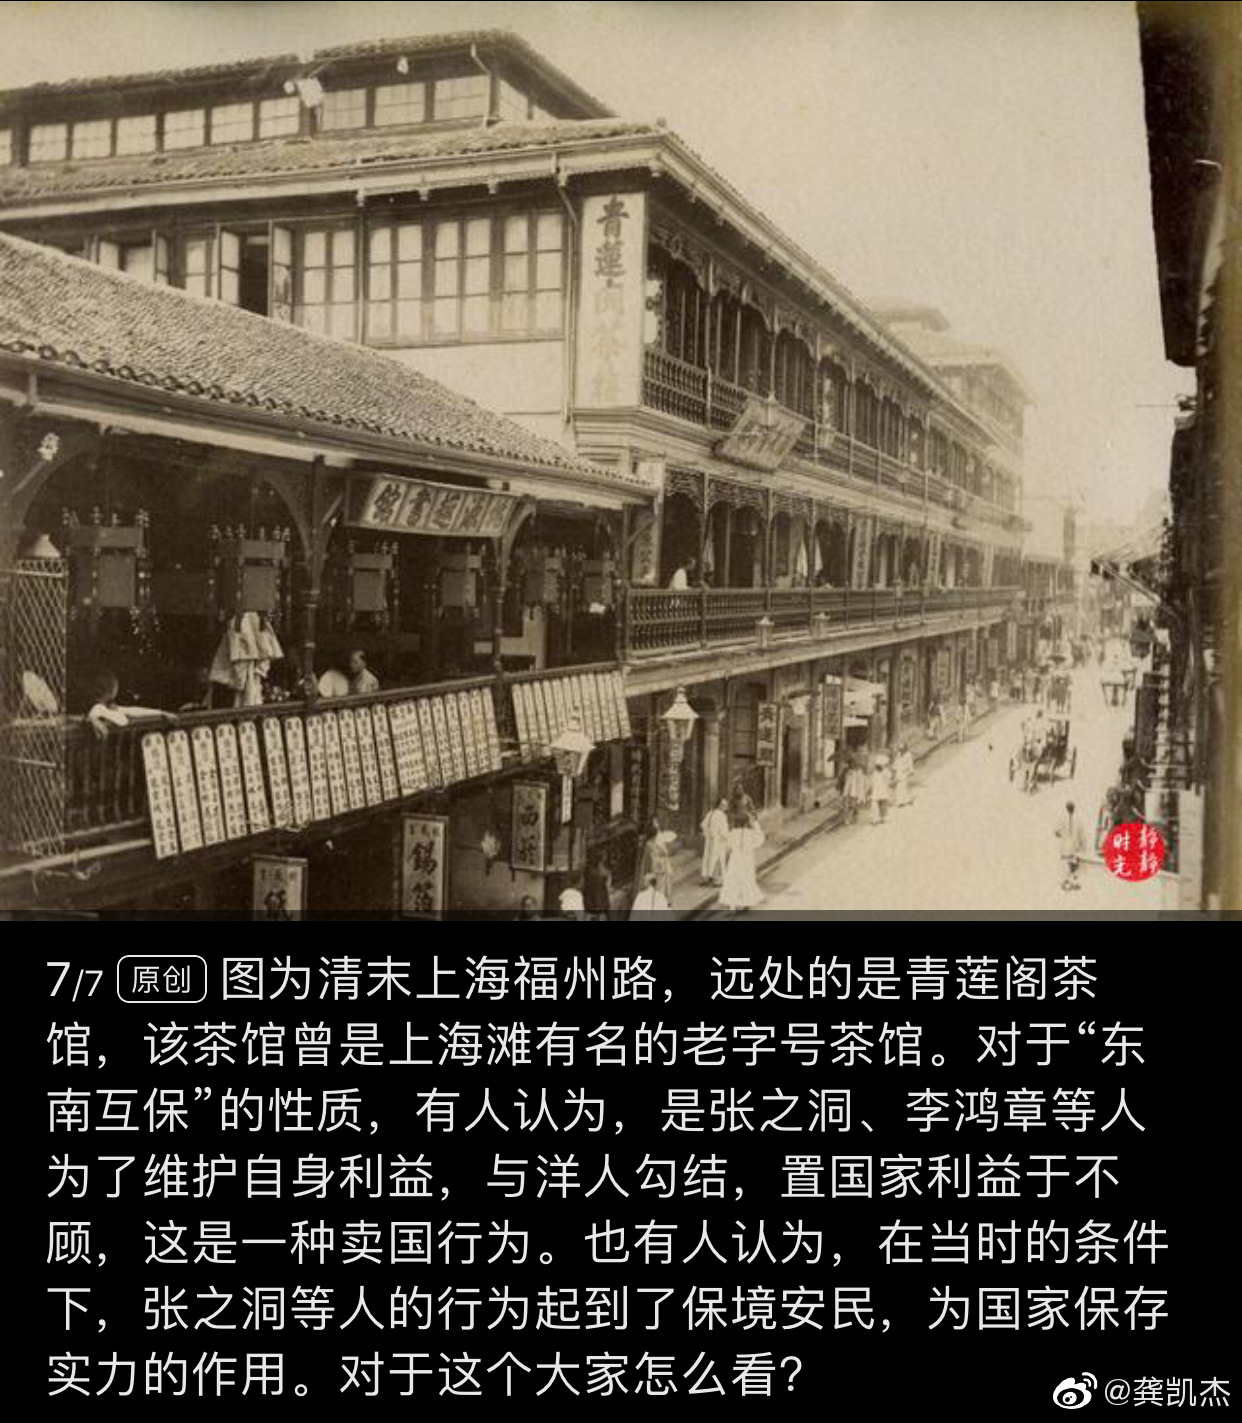 这是1900年的上海此刻距离清朝灭亡还剩12年来自静静时光